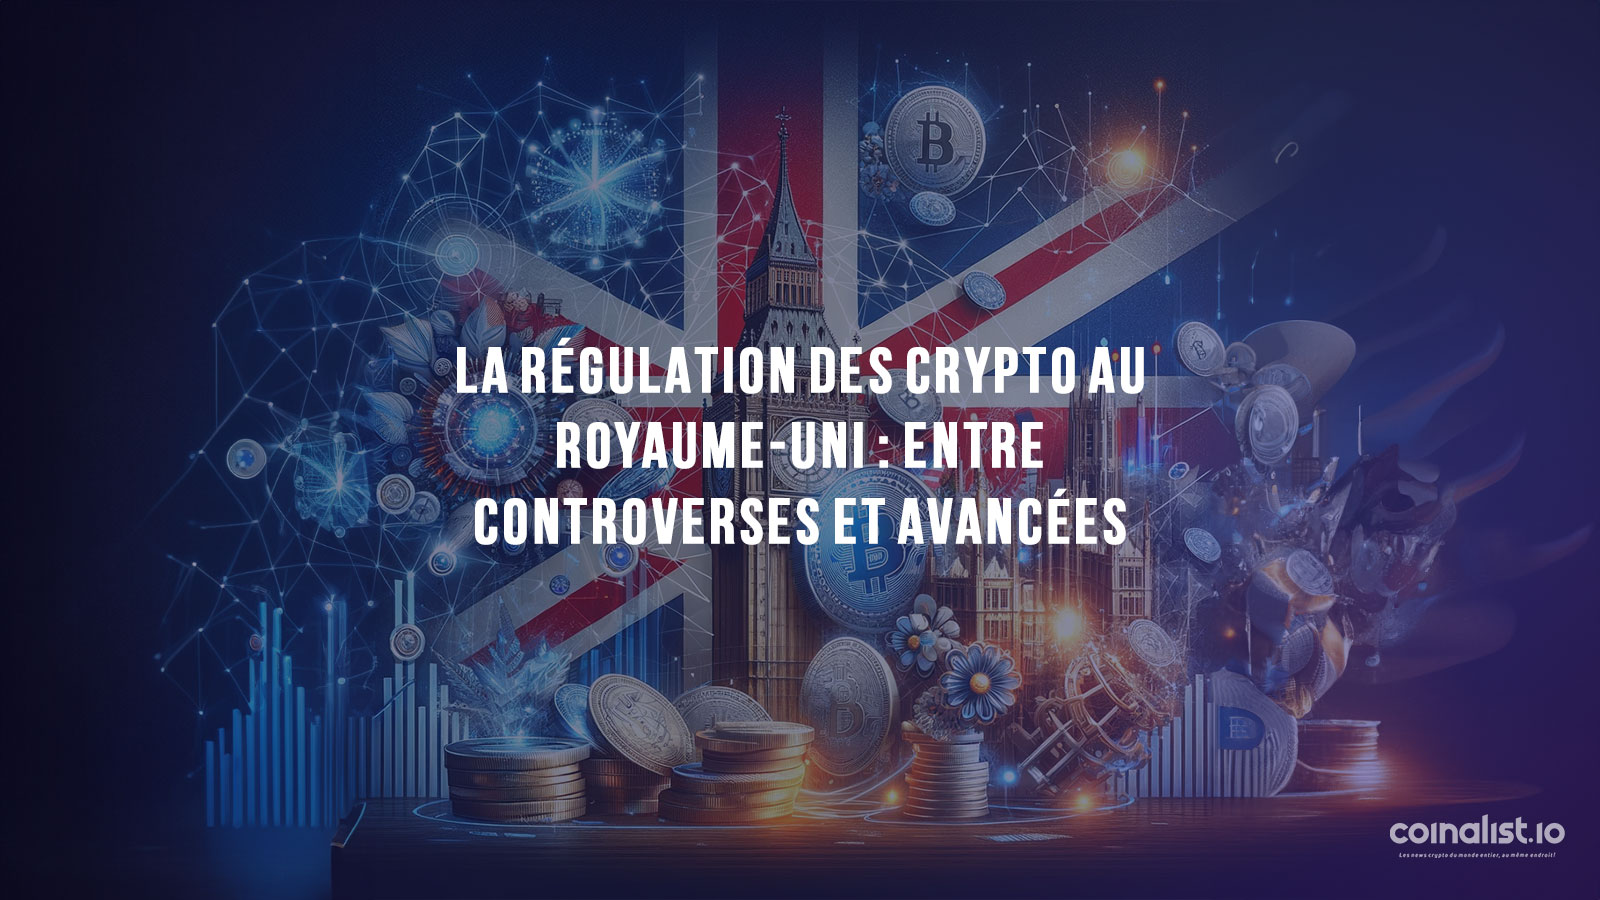 La Régulation Des Crypto-Monnaies Au Royaume-Uni, Représentée Par Des Symboles Britanniques Iconiques Entrelacés Avec Des Éléments De Cryptomonnaie Et De Blockchain